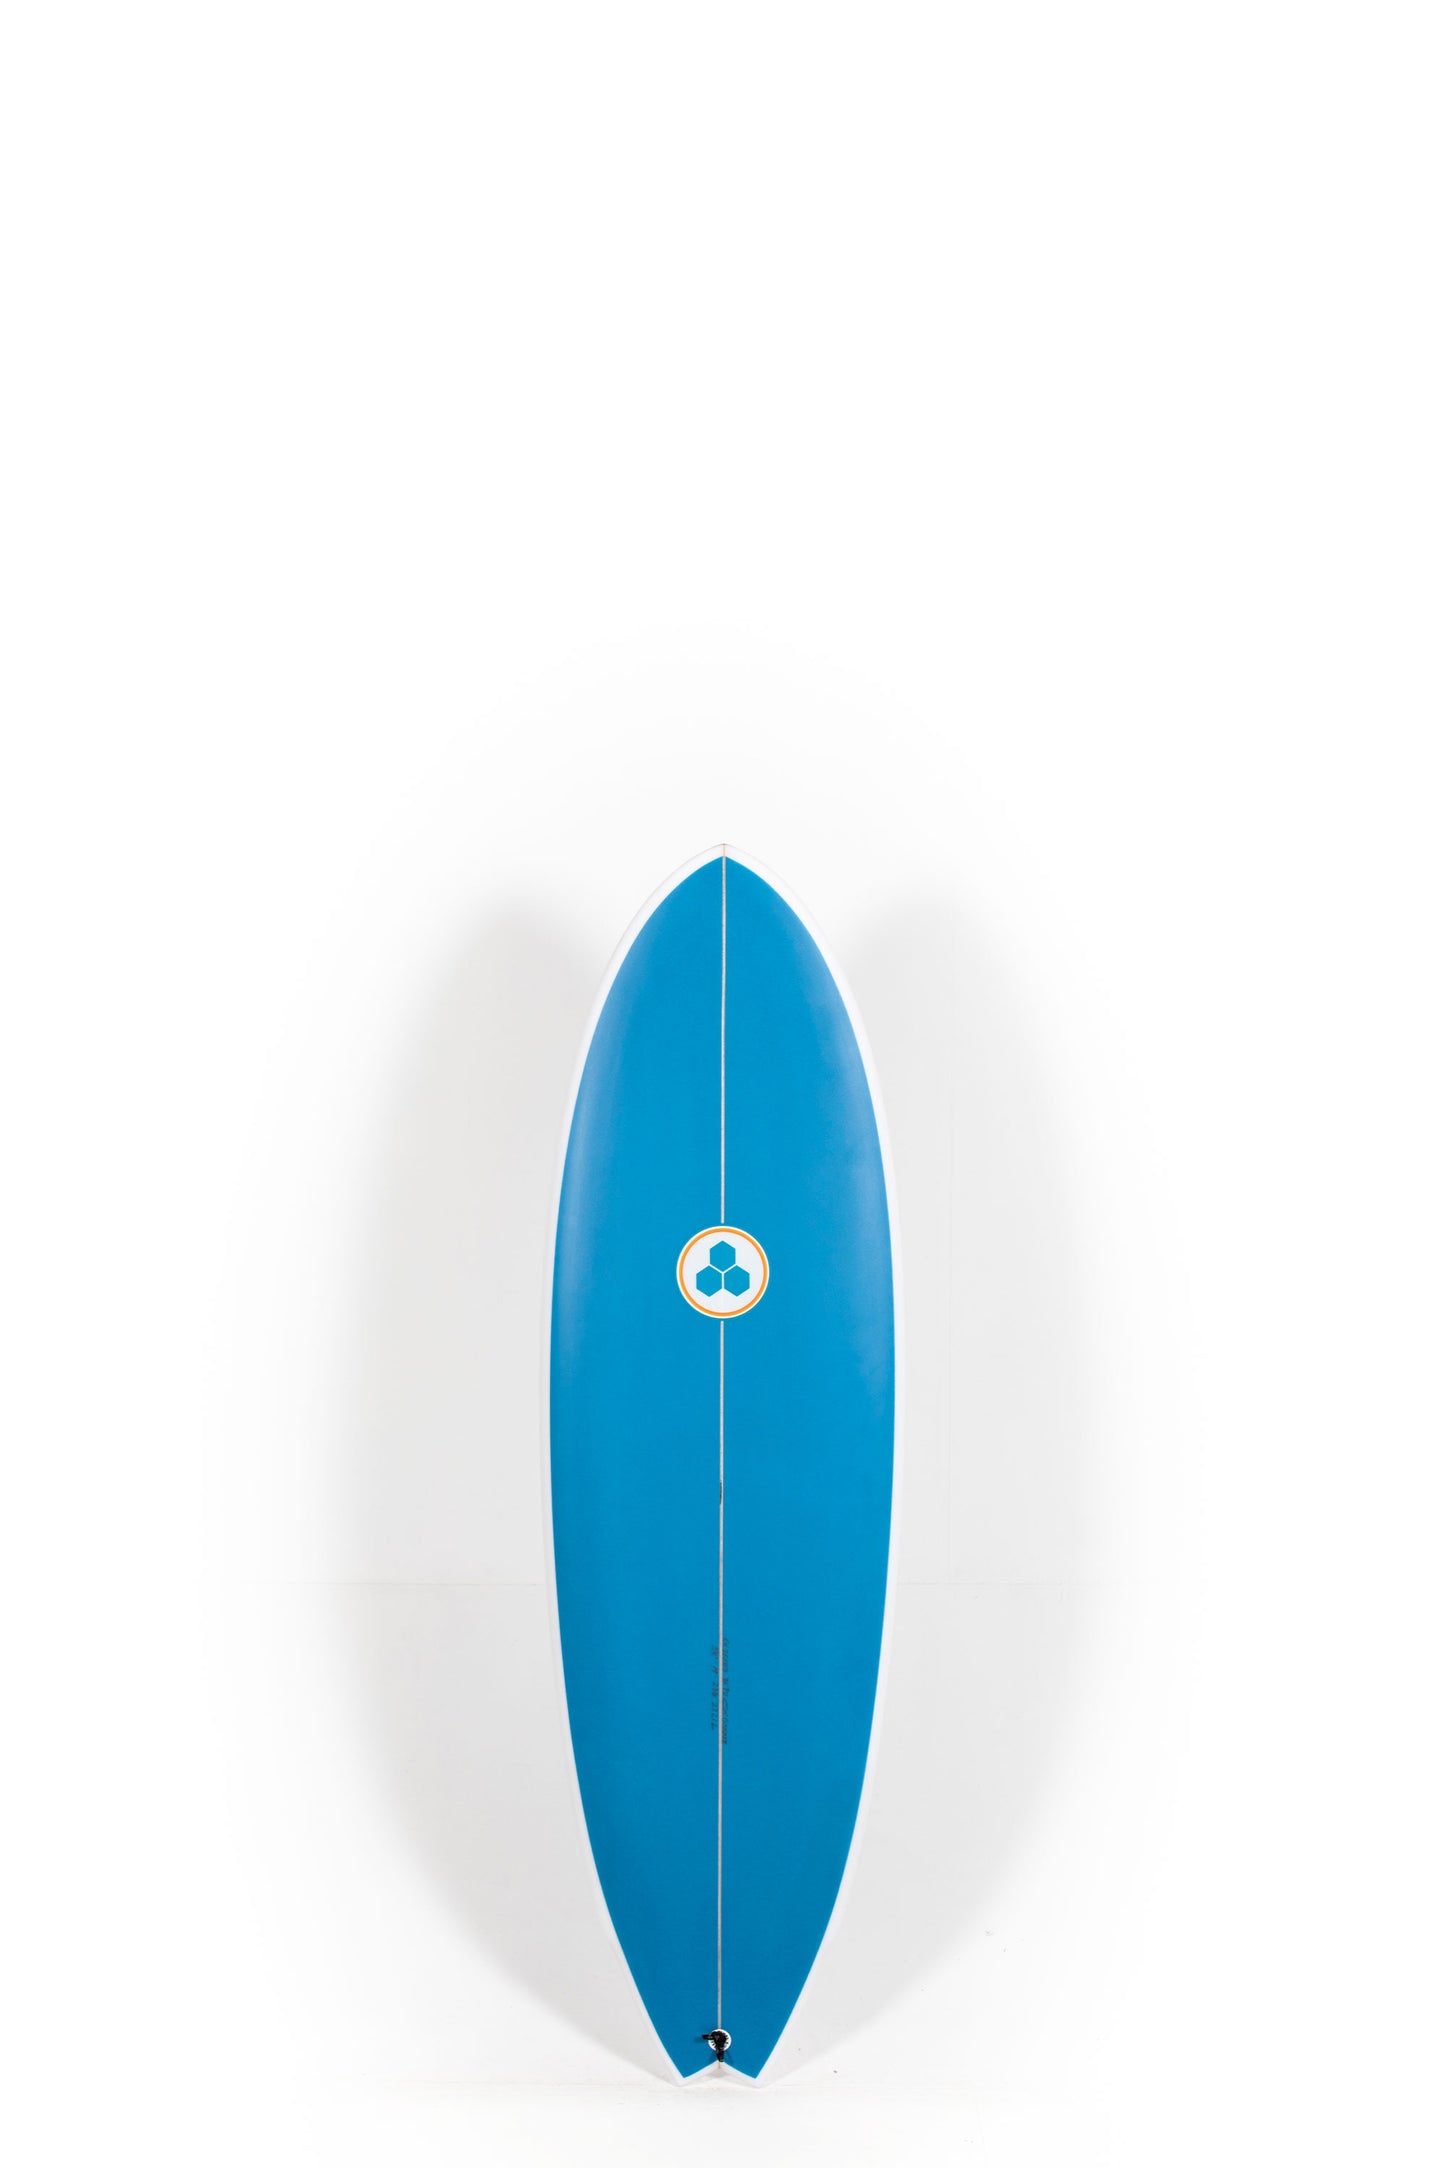 Pukas Surf Shop - Channel Islands - G-Skate by Al Merrick - 5'4" x 19 x 2 3/8 - 27.21L - CI26687